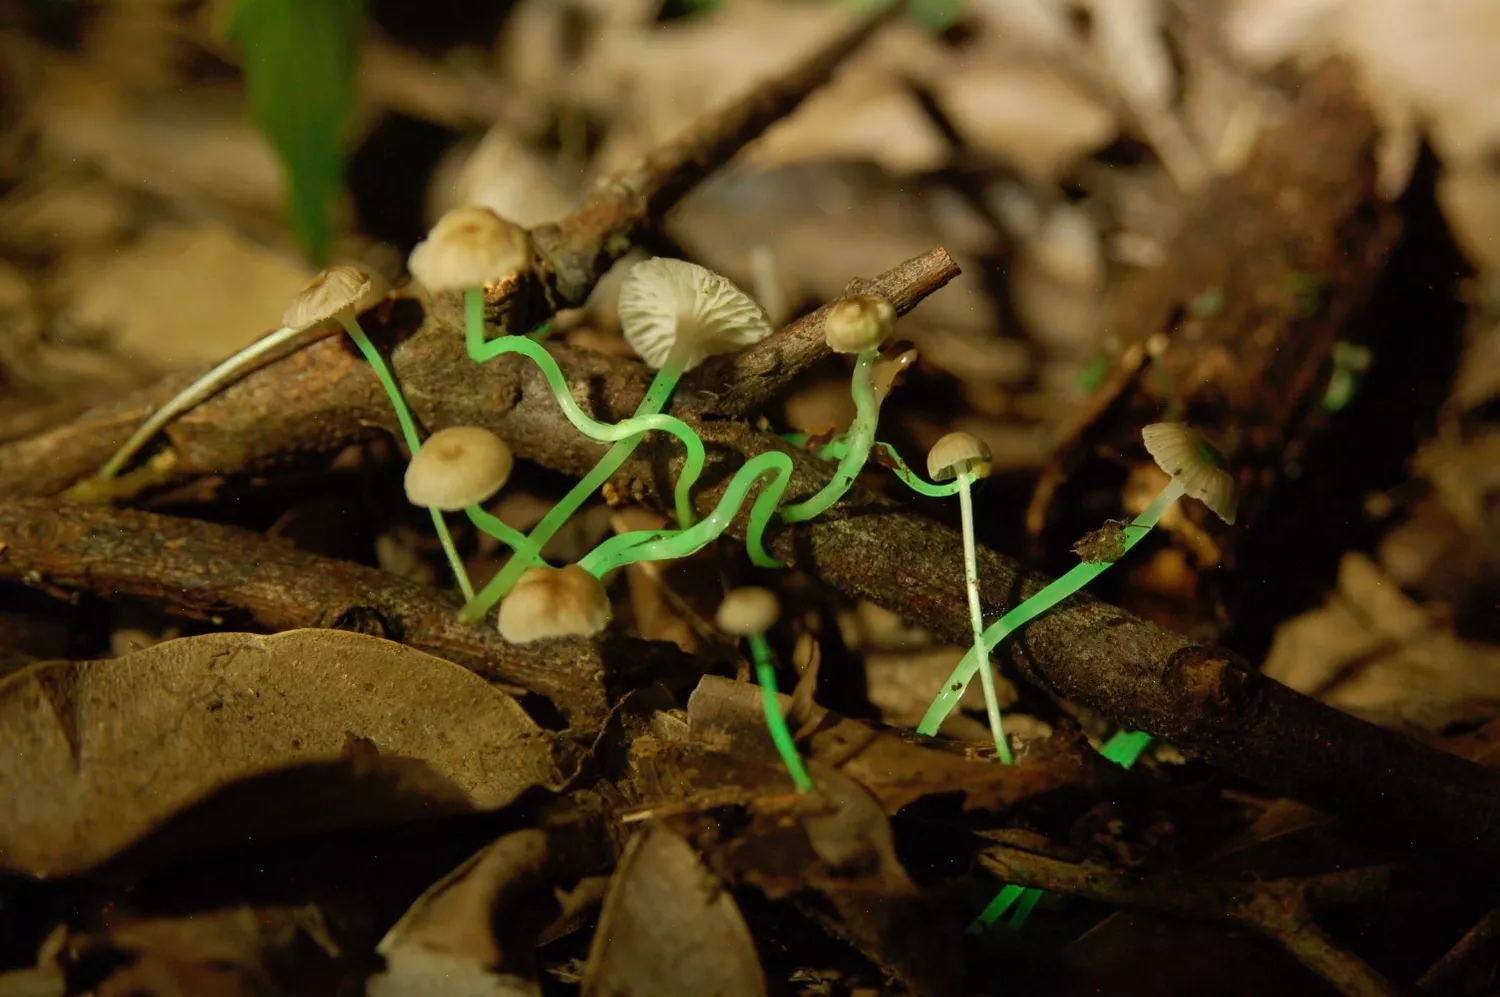 Растущий в лиственной подстилке гриб Mycena luxaeterna с шипиками, светящимися зеленым светом